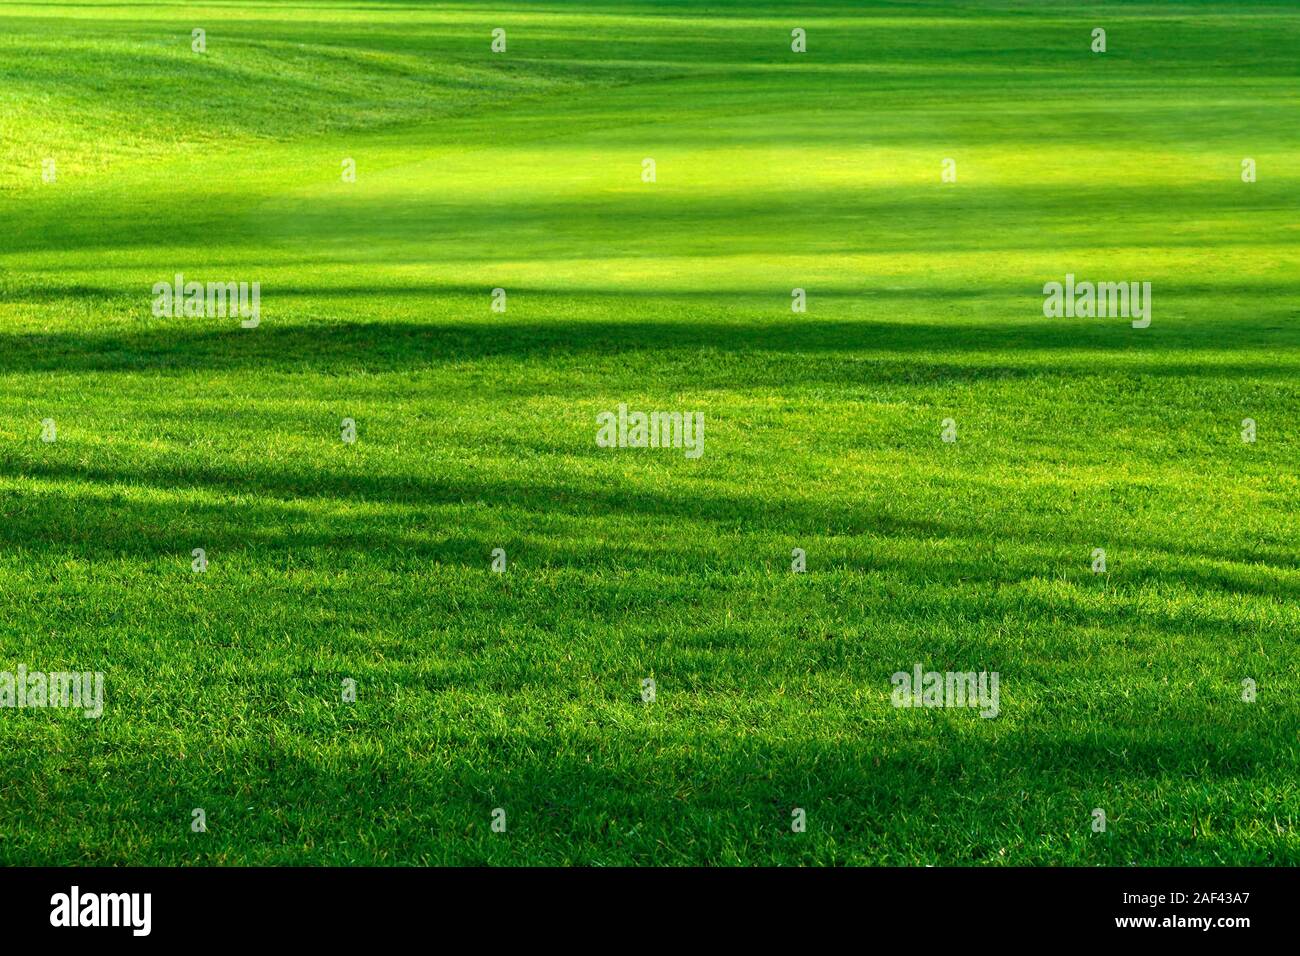 Motif à rayures de lumière et d'ombre sur une belle pelouse verte fraîche d'un terrain de golf, aux couleurs vives. Banque D'Images